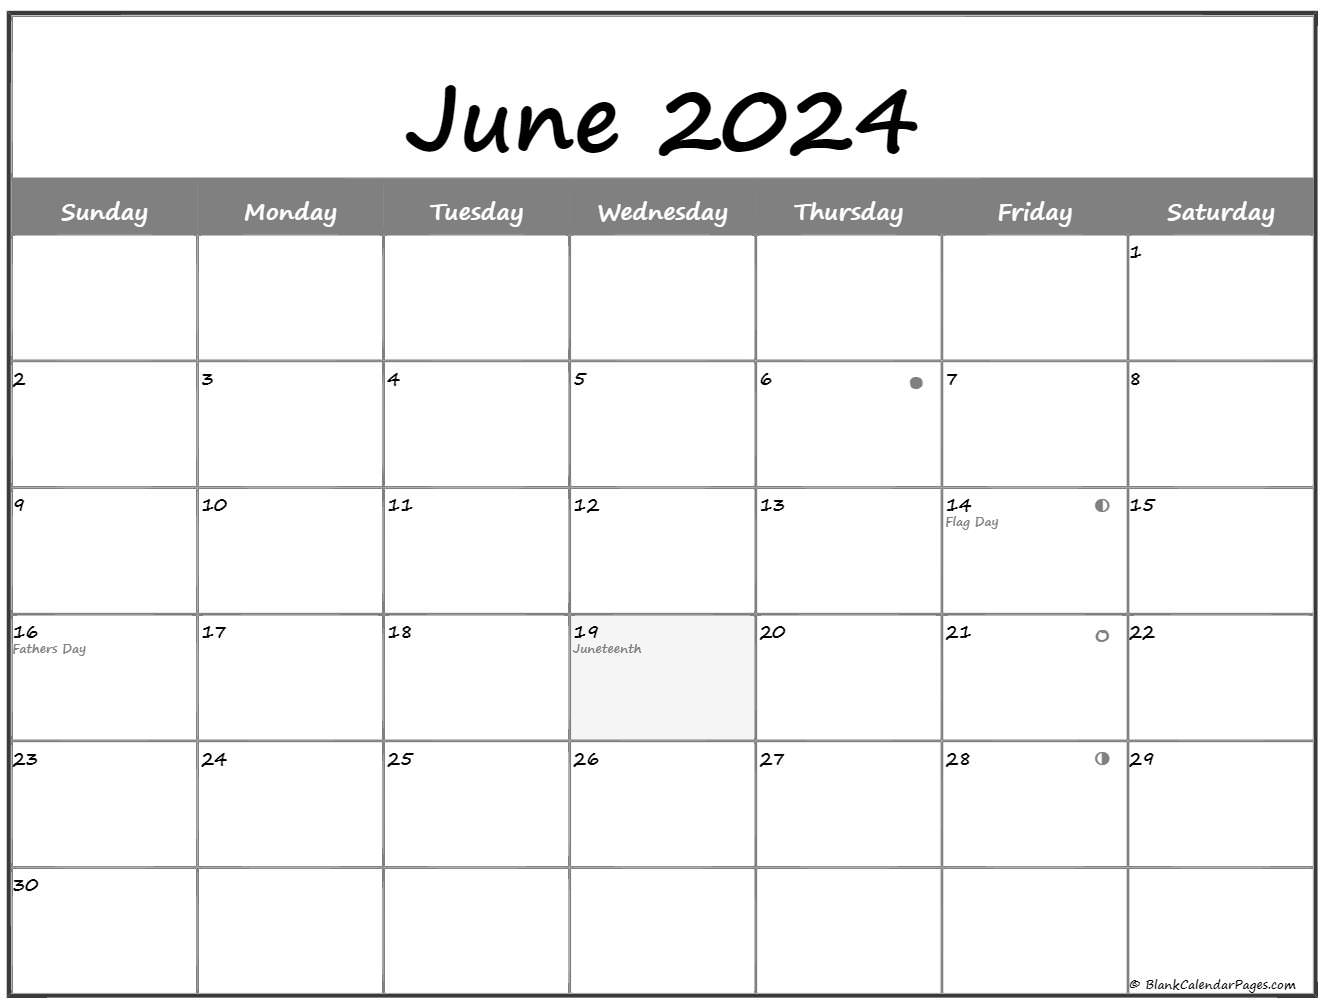 June 2020 Lunar Calendar